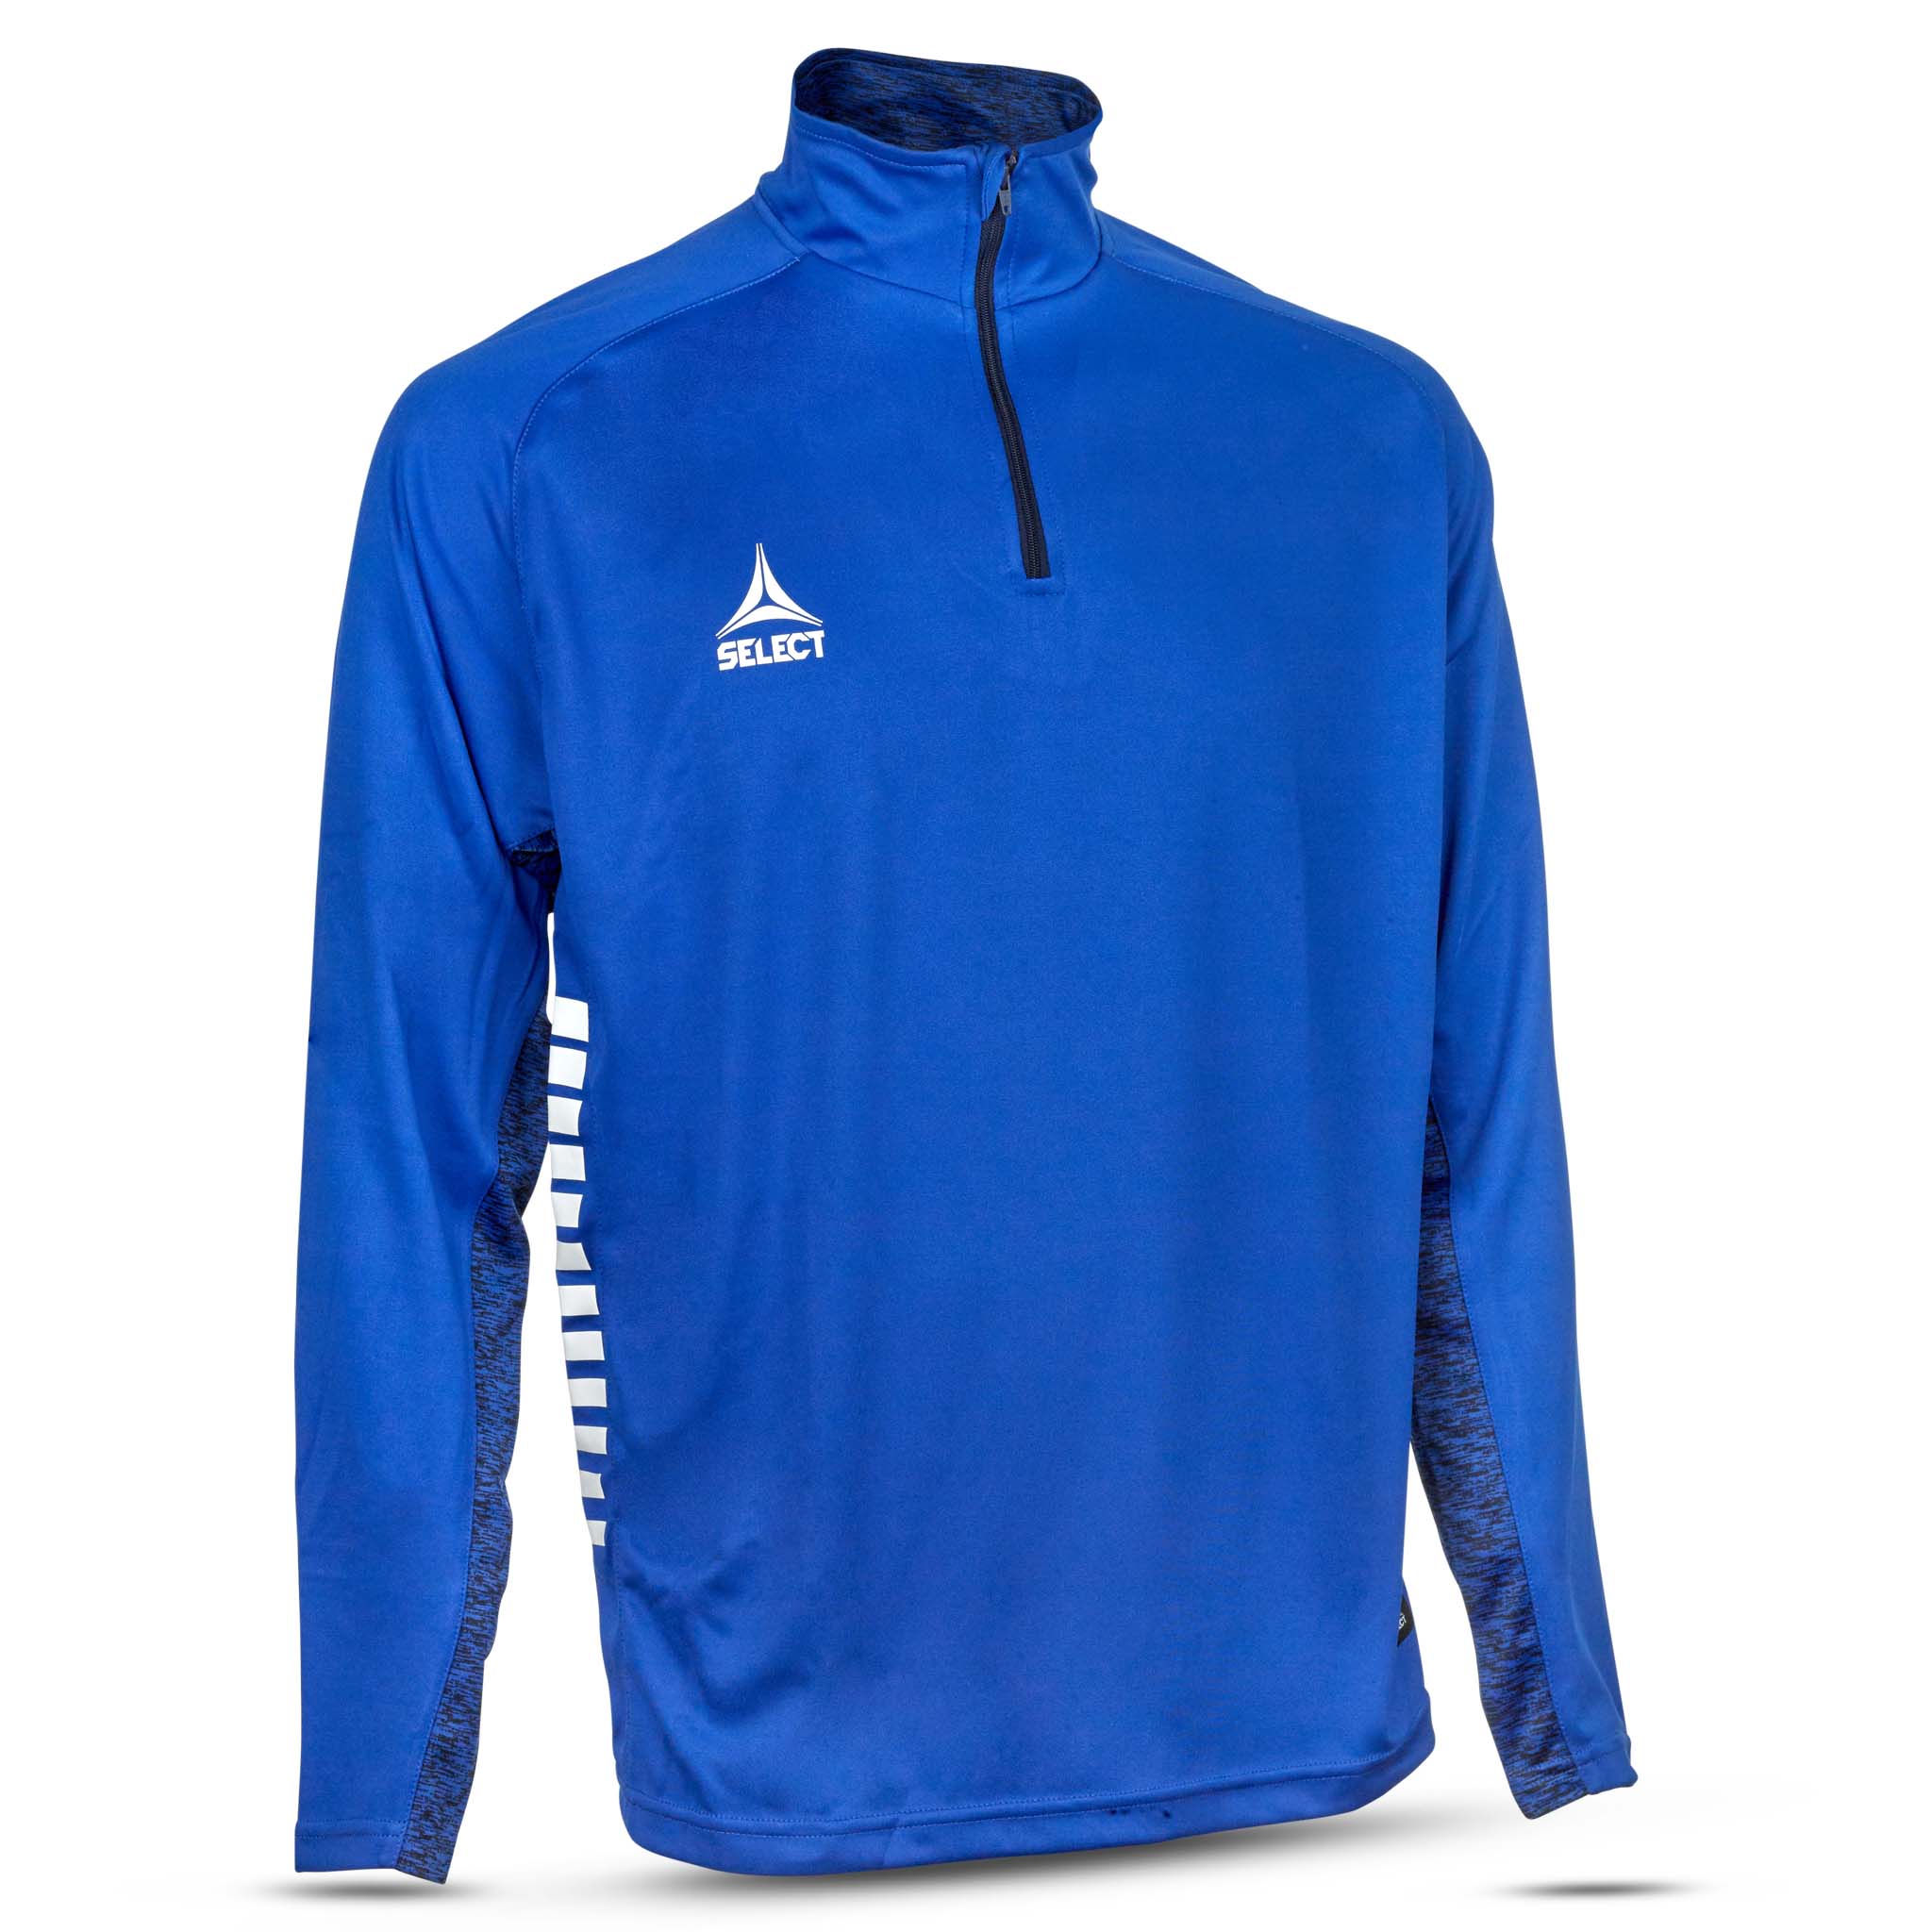 spain Träning sweatshirt 1/2 zip #färg_blå